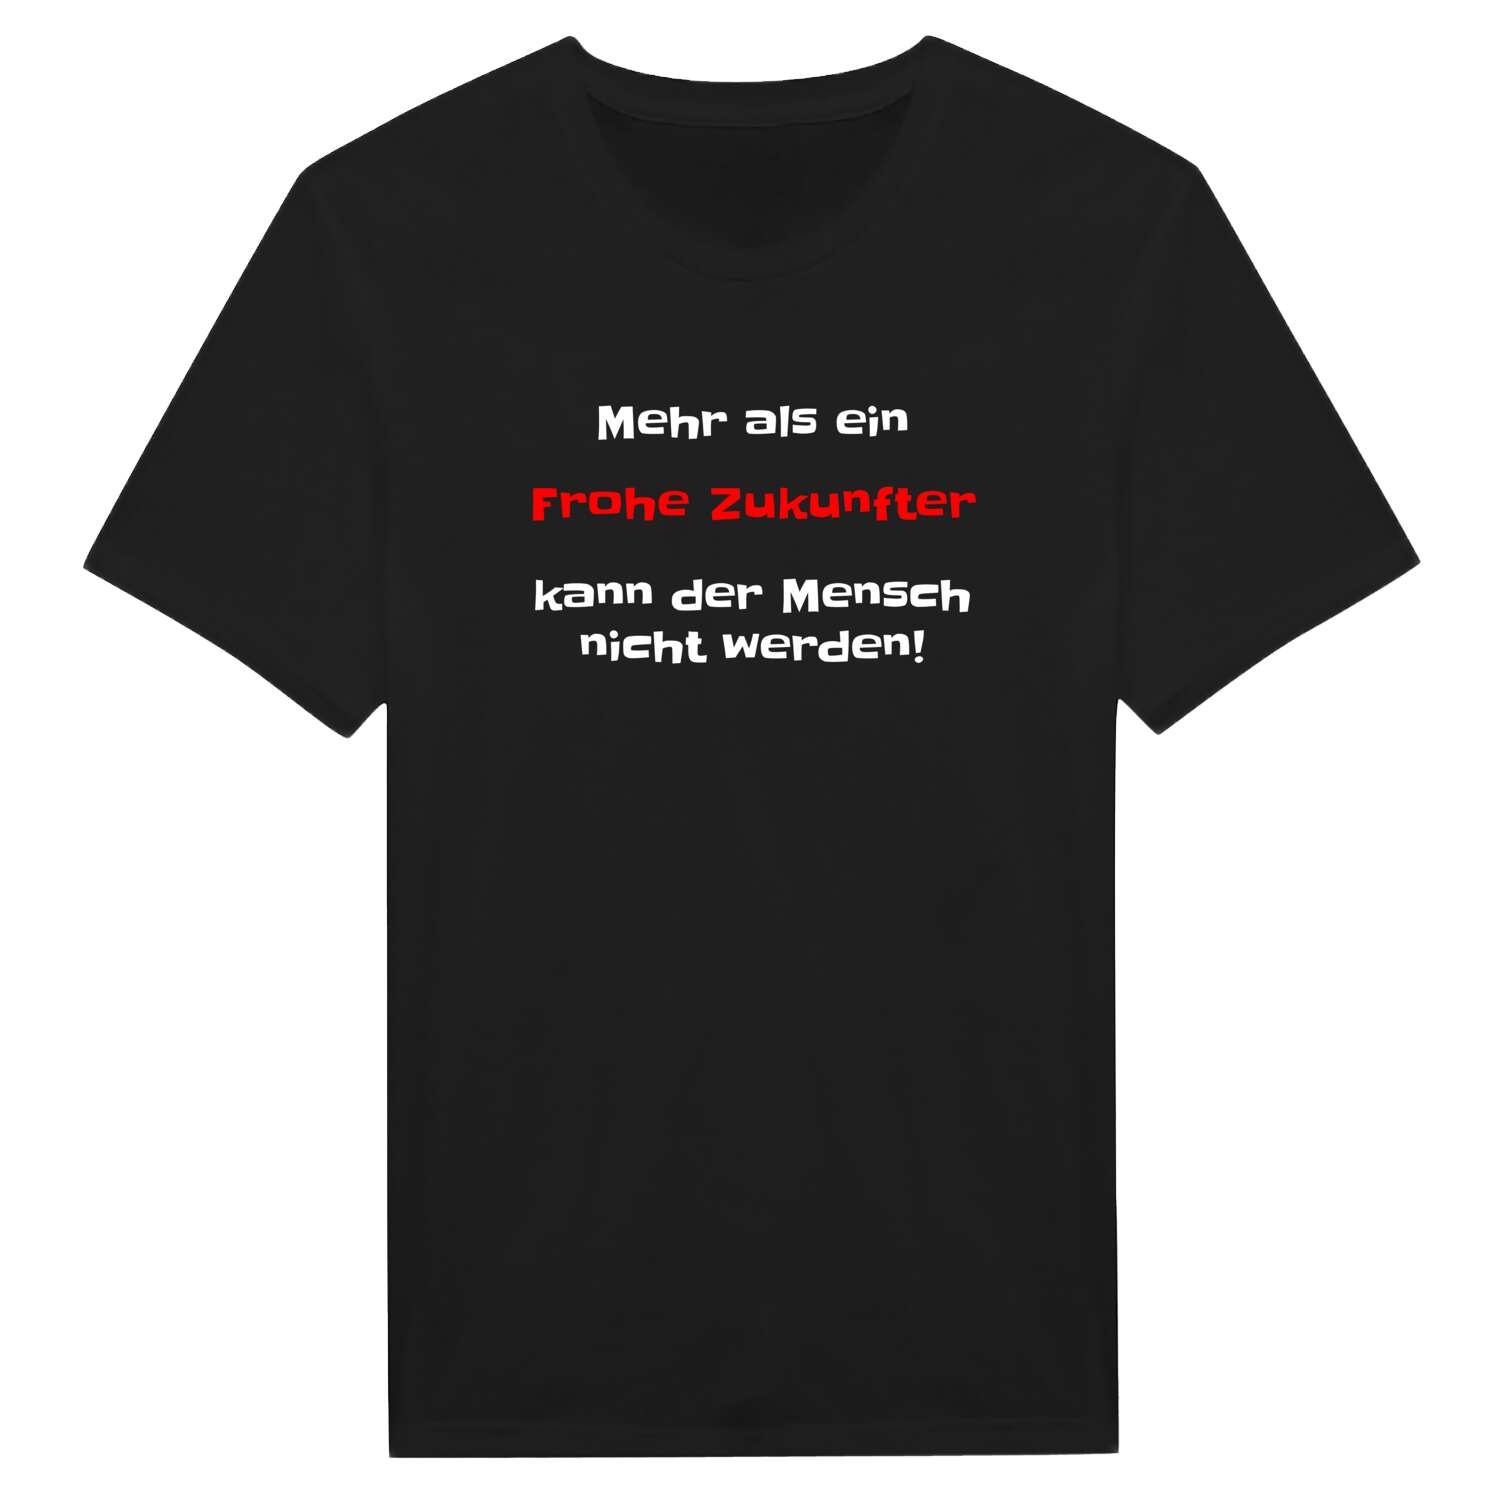 Frohe Zukunft T-Shirt »Mehr als ein«